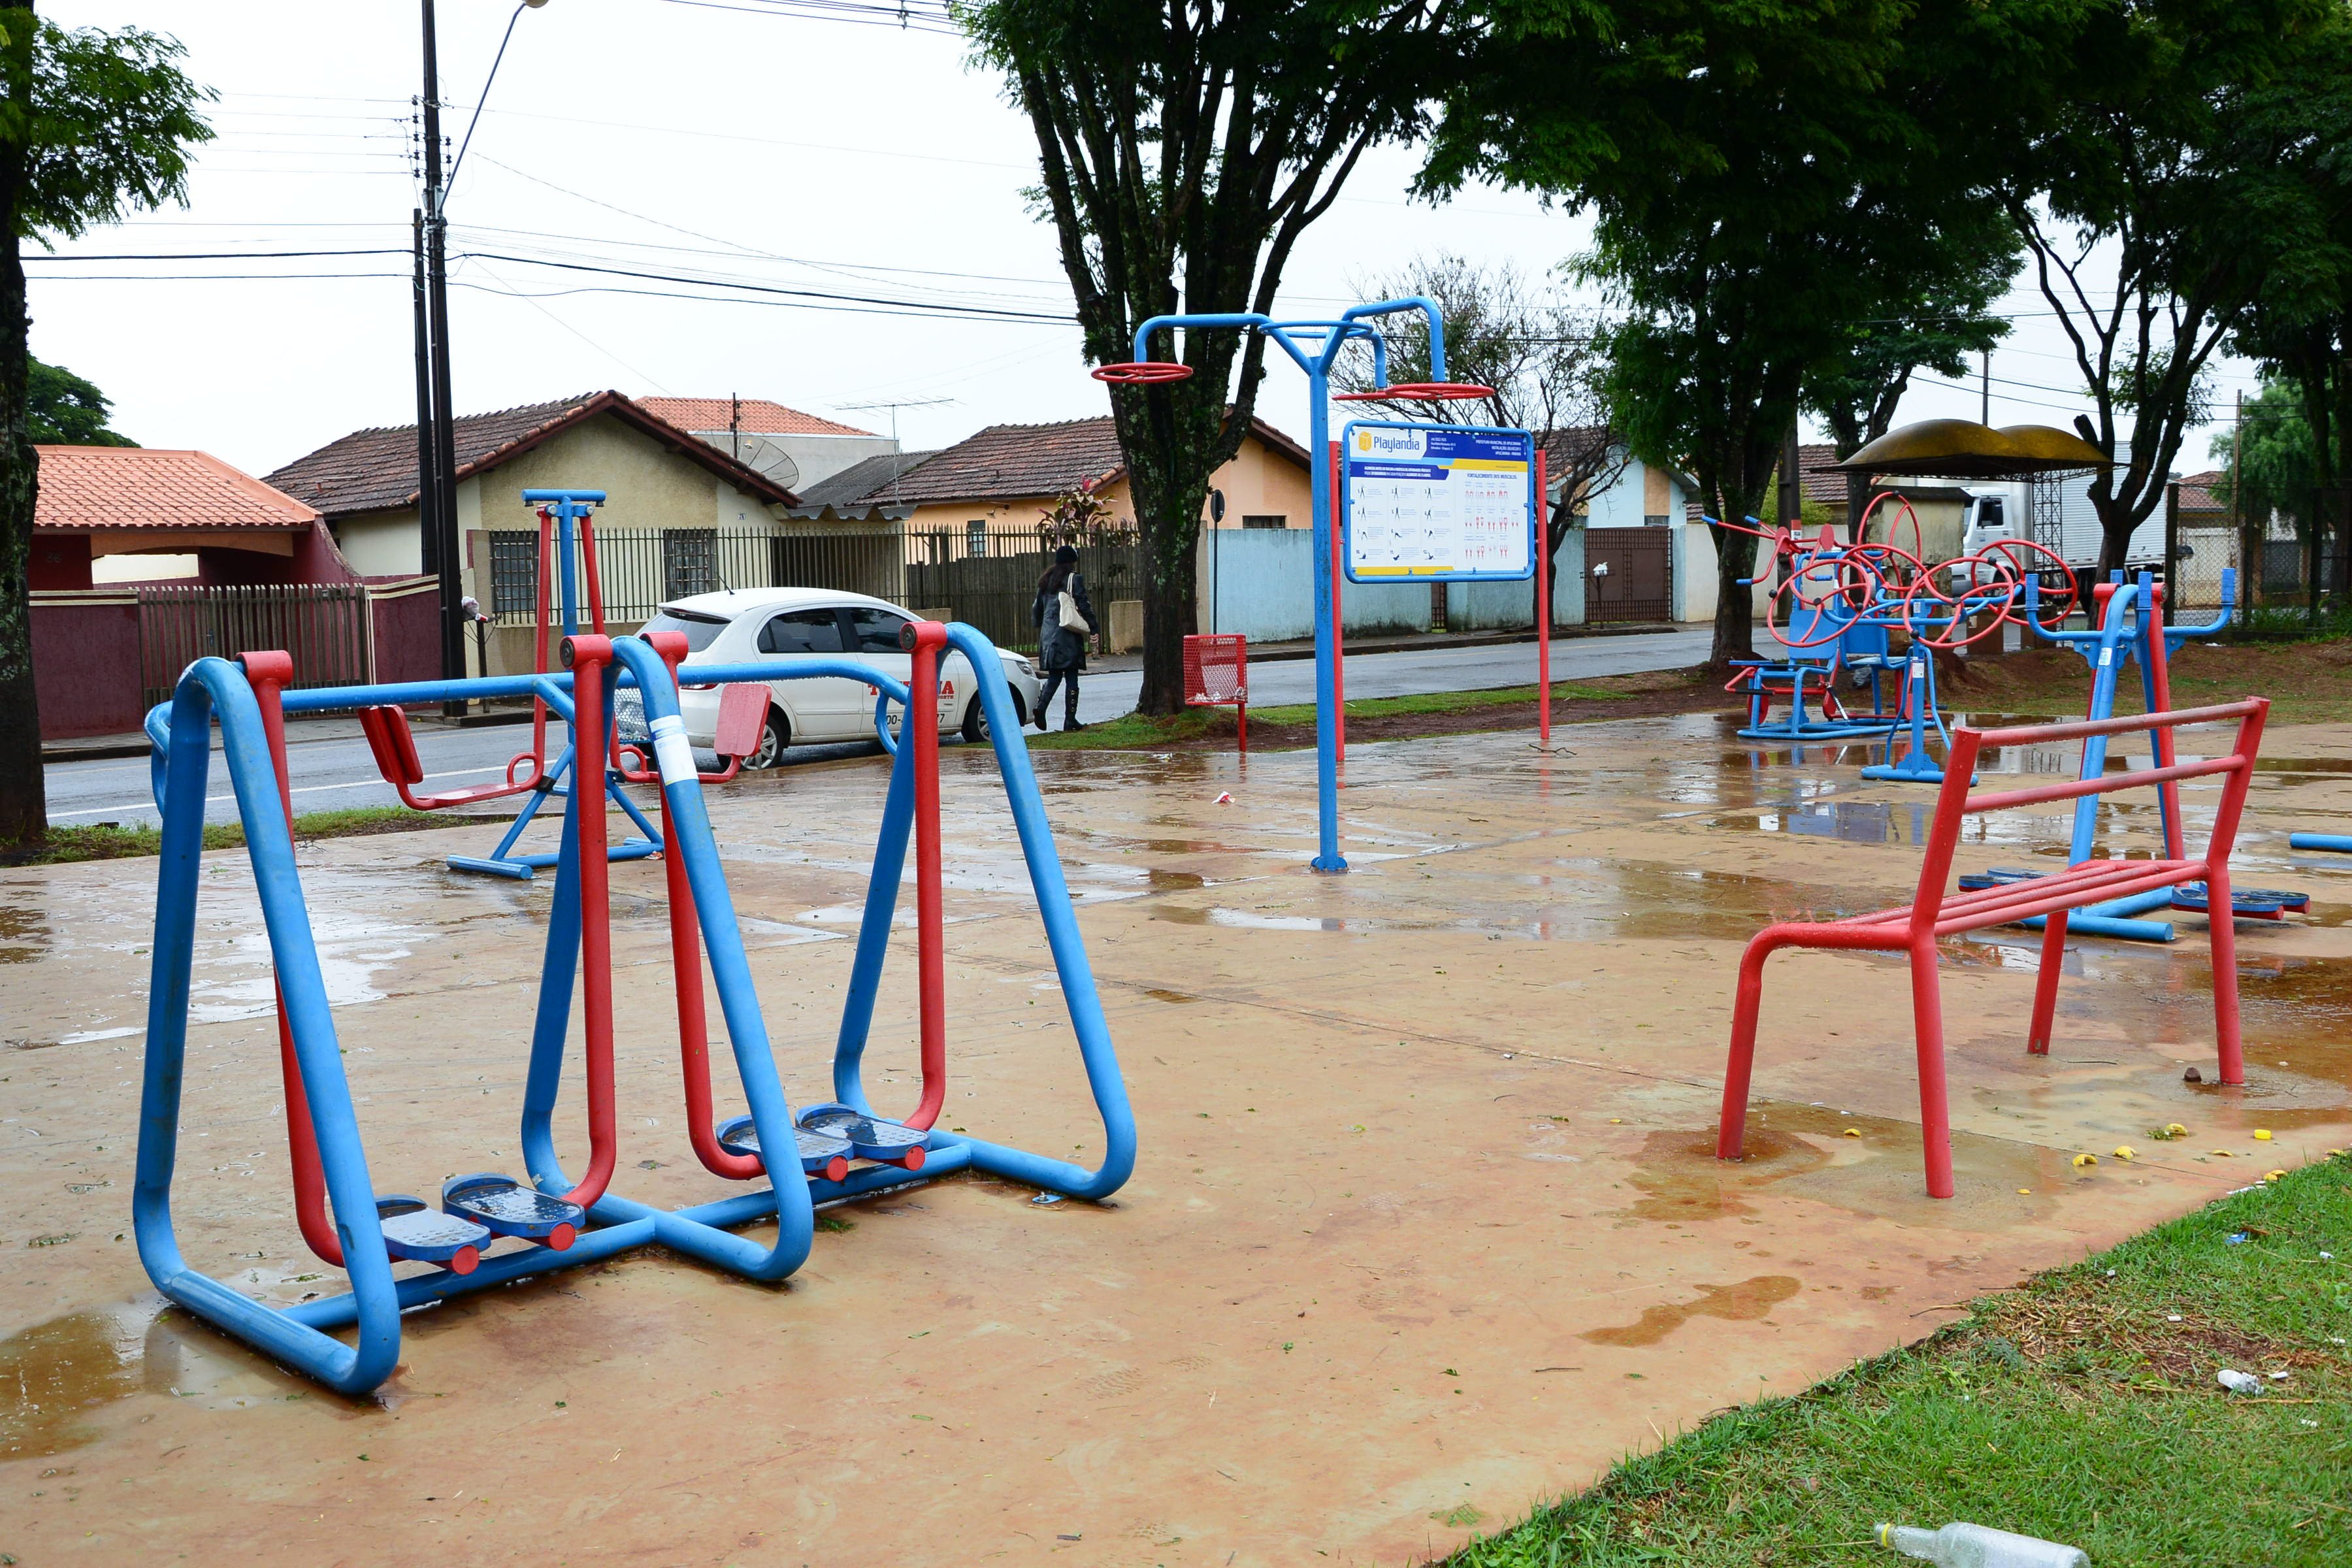 Espancamento ocorreu em academia ao ar livre do Núcleo Parigot de Souza (Foto: Delair Garcia)